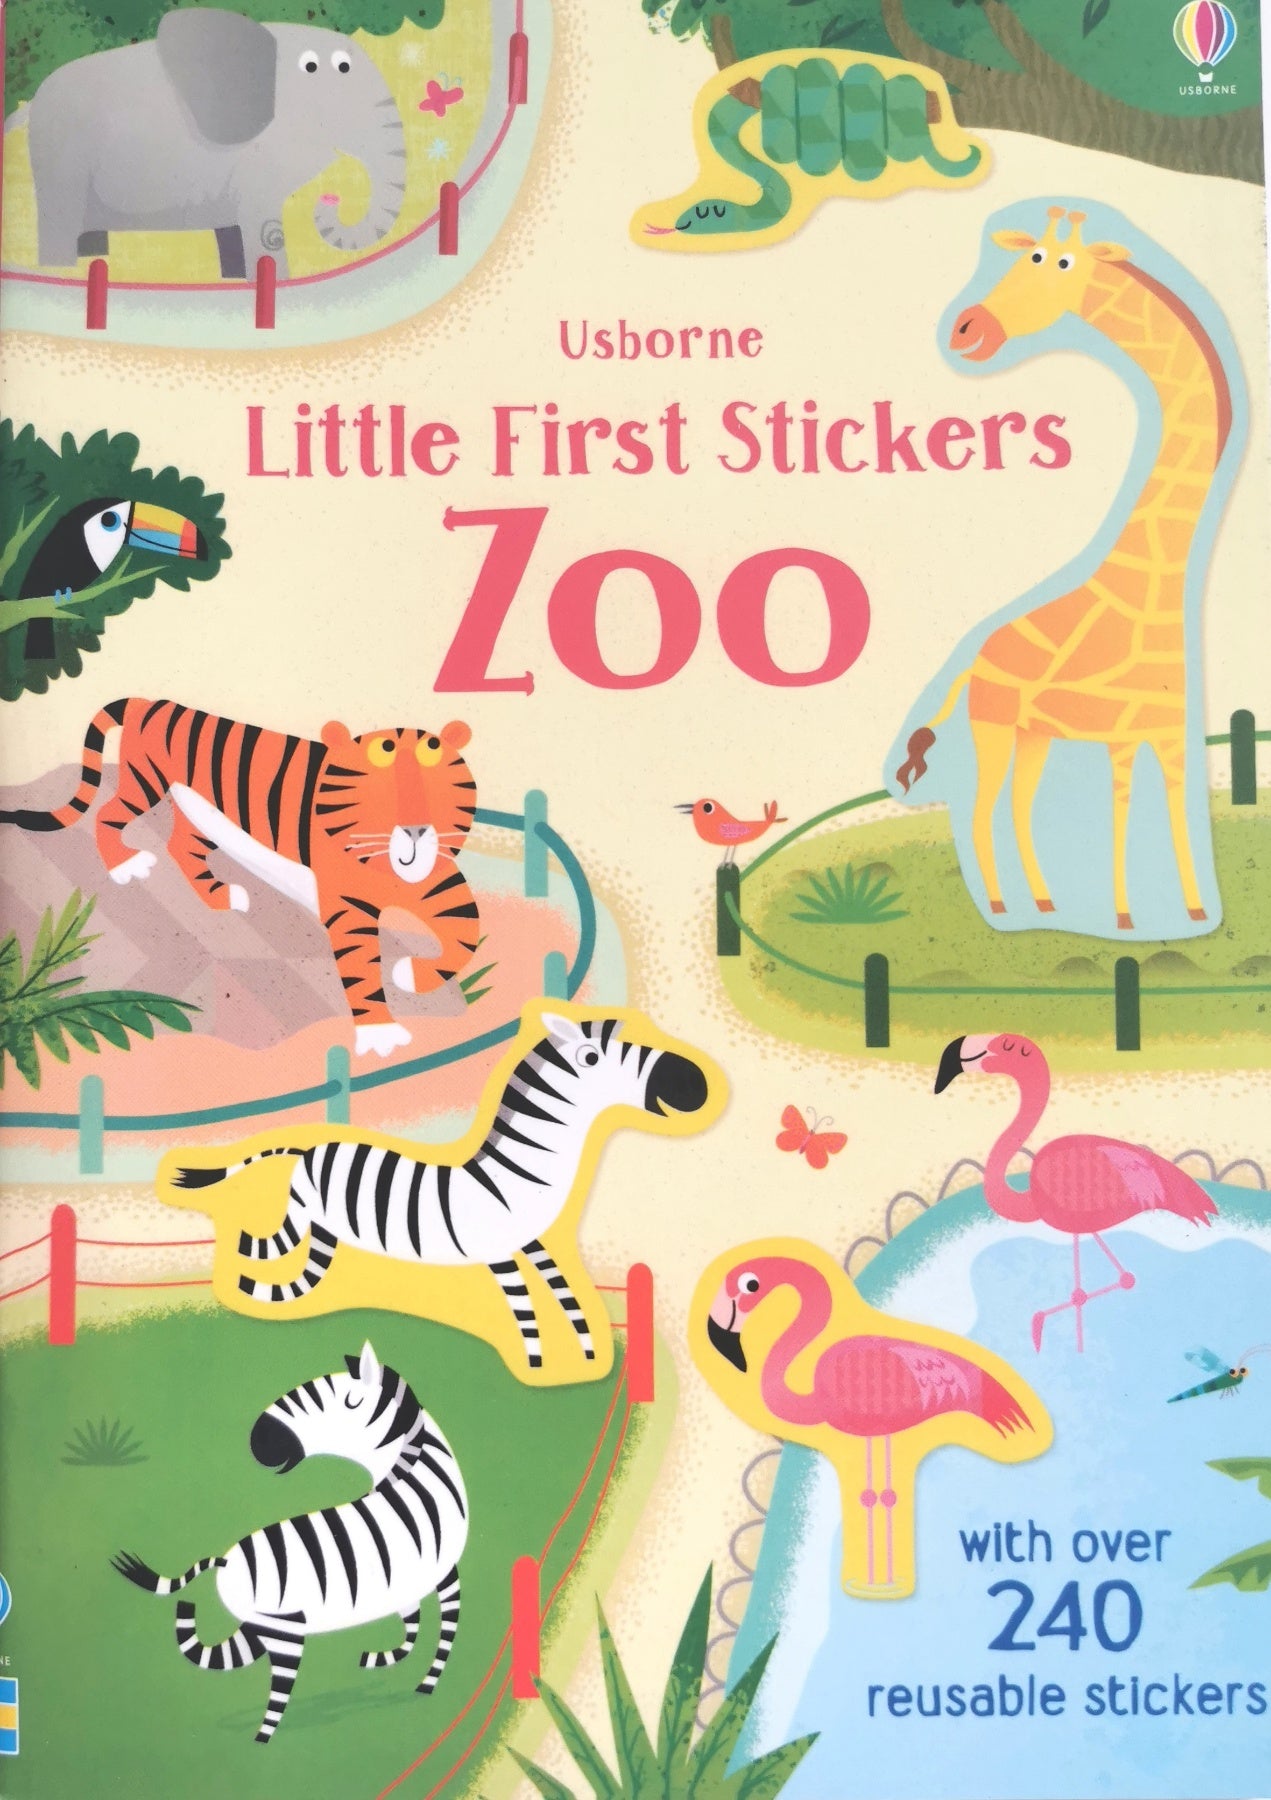 Usborne Little First Stickers Sticker Book - Zoo